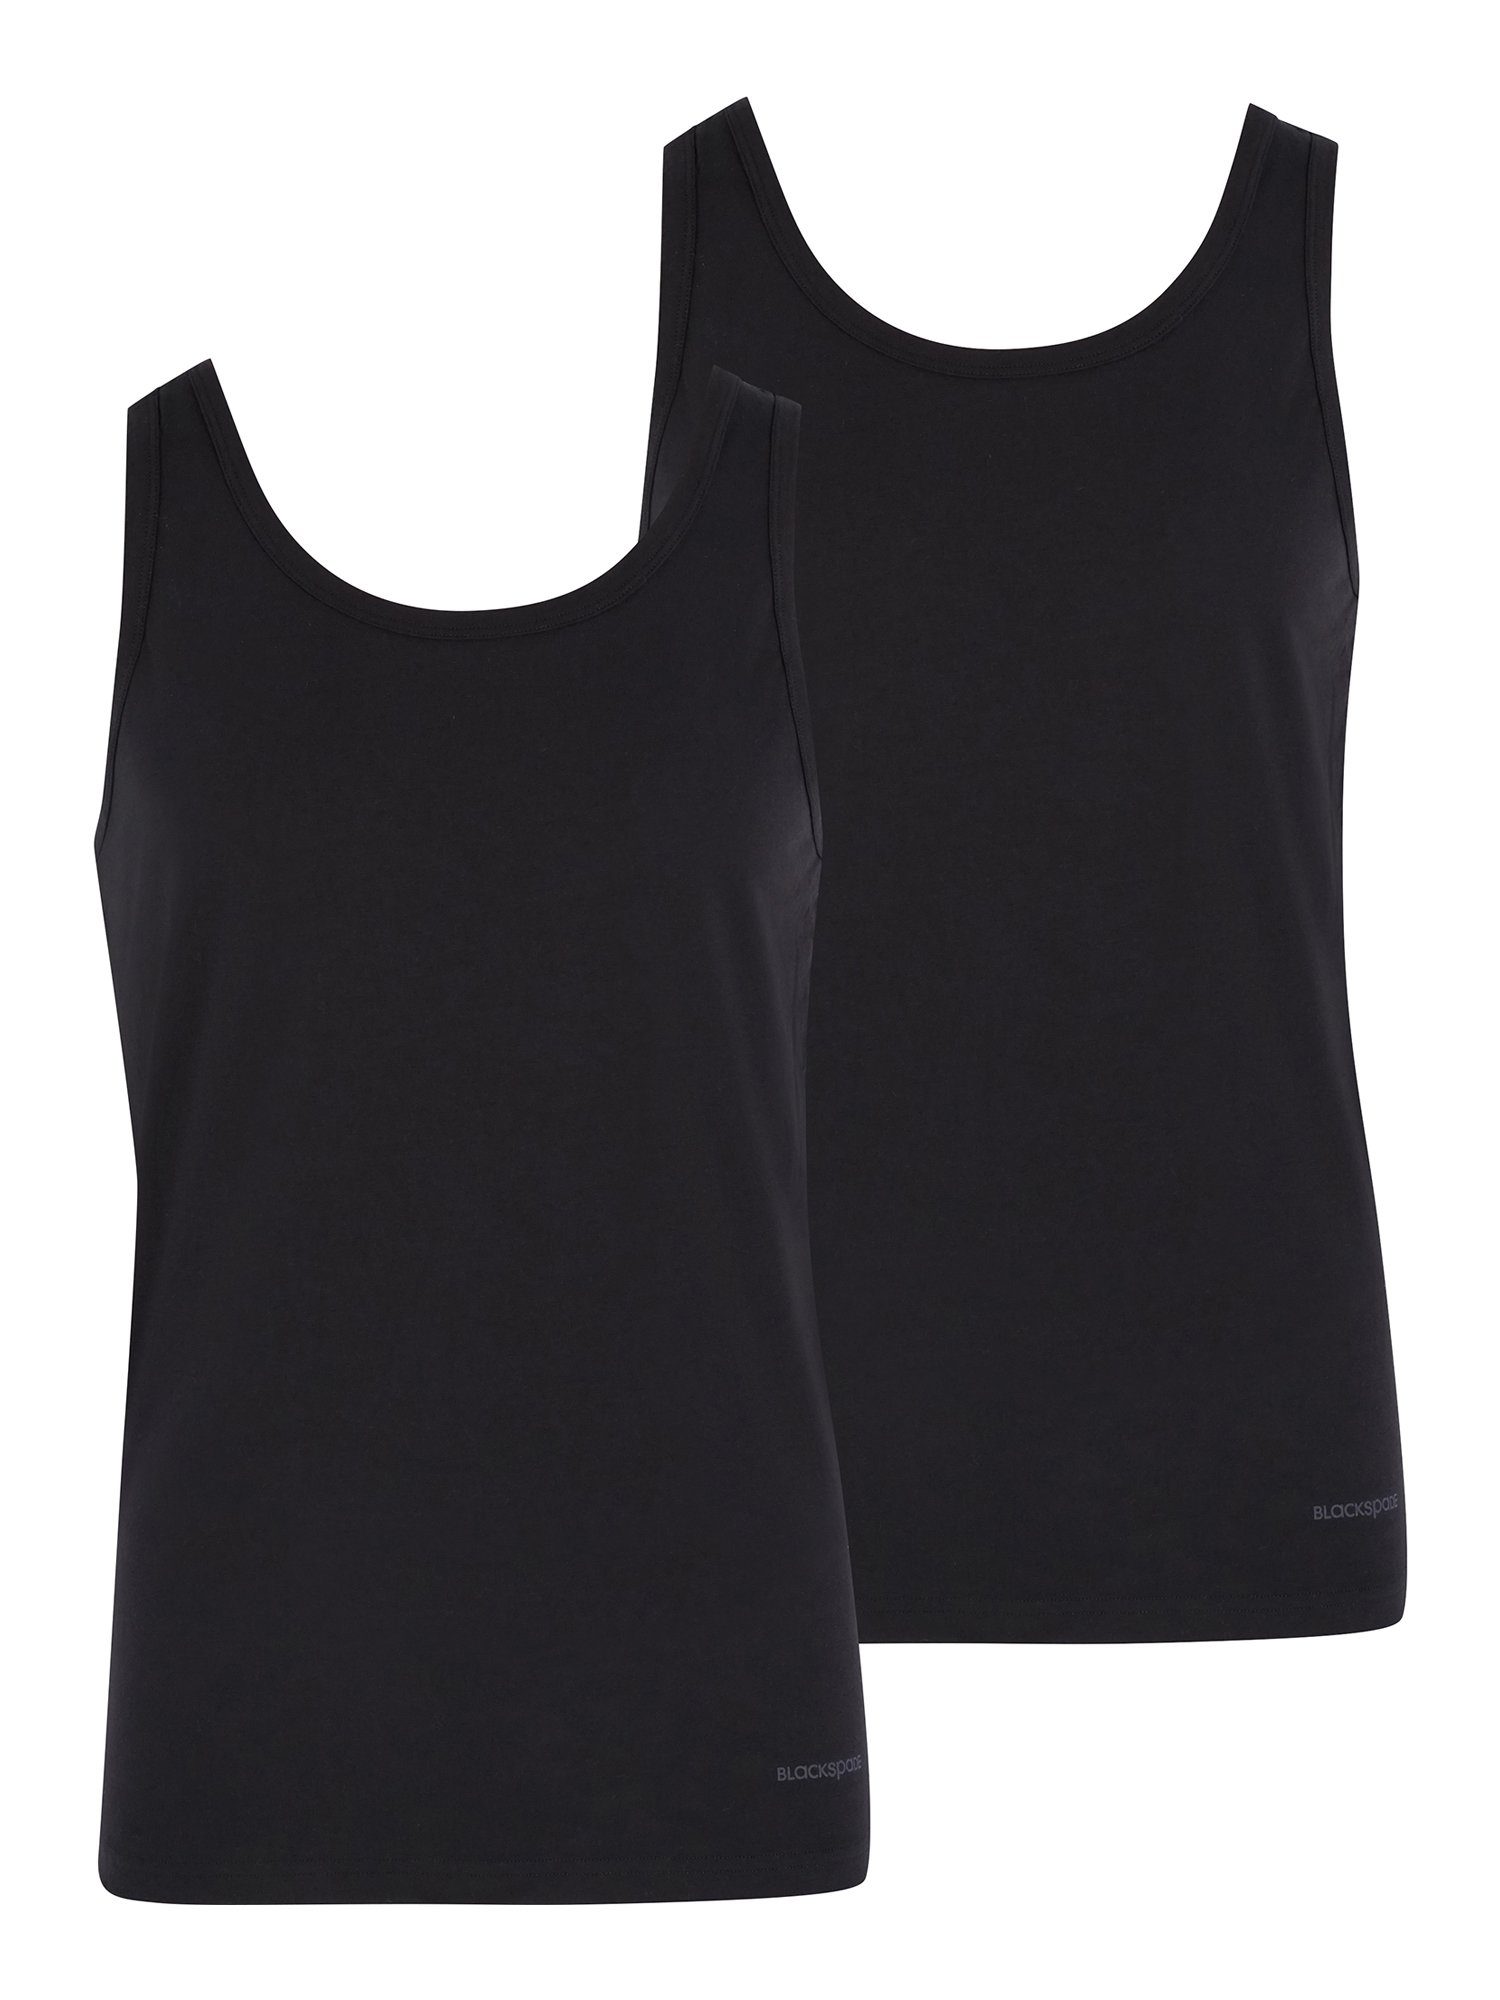 Cotton Tender (2-St) BlackSpade schwarz Unterhemd